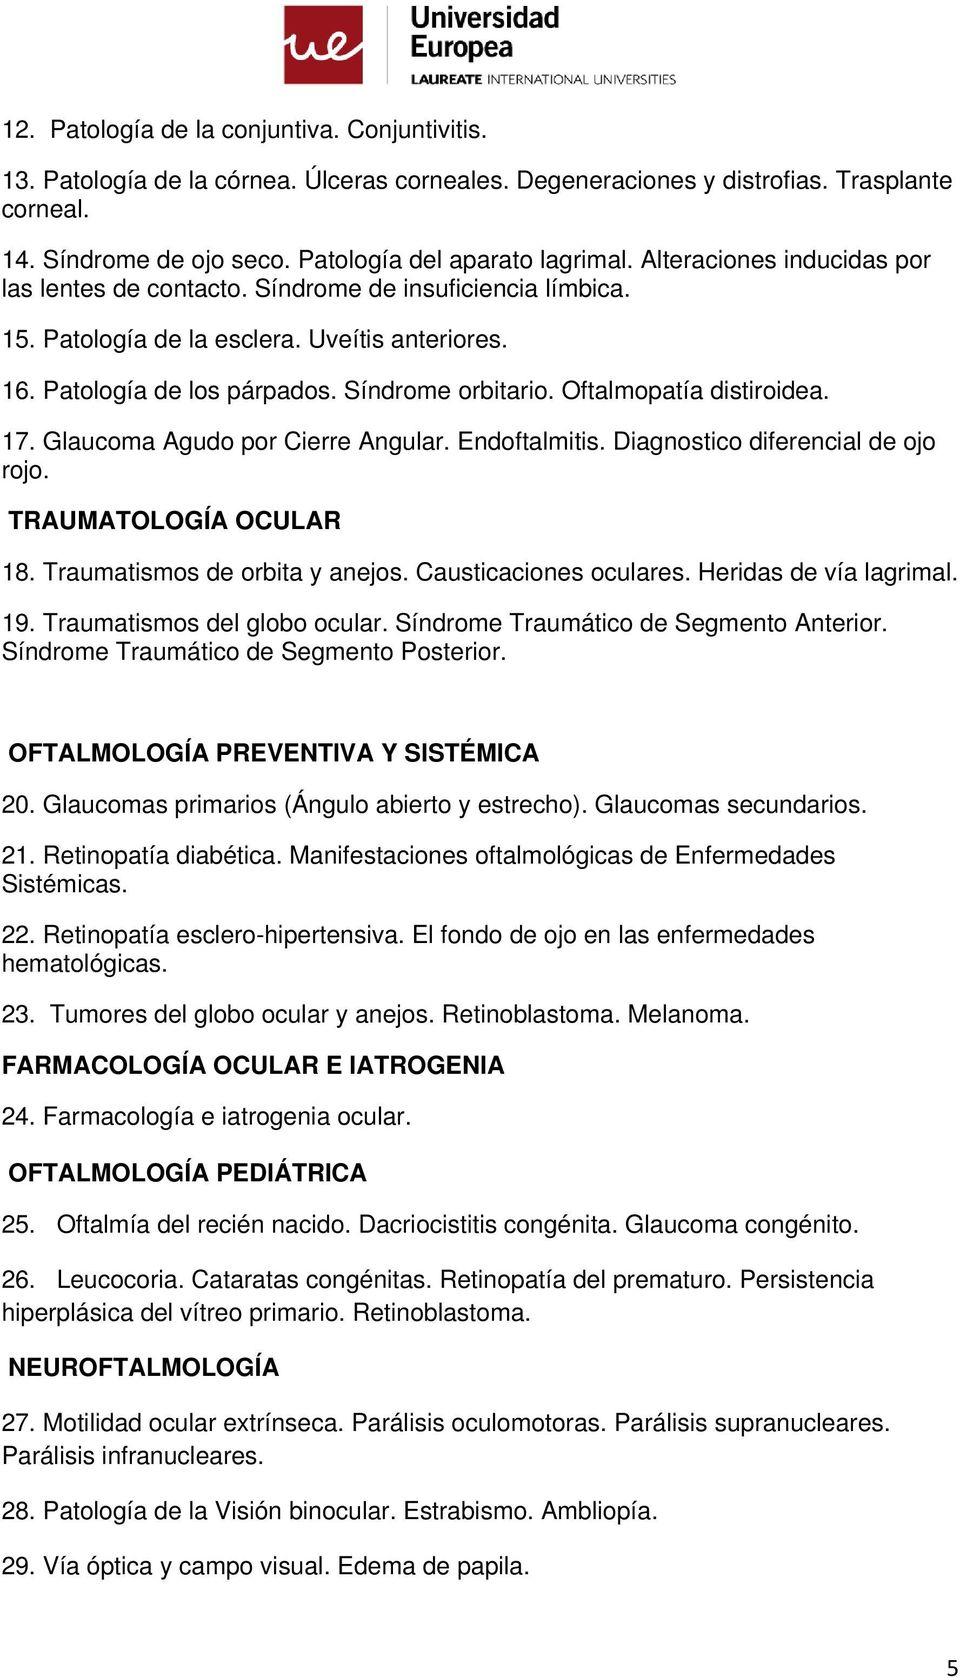 Oftalmopatía distiroidea. 17. Glaucoma Agudo por Cierre Angular. Endoftalmitis. Diagnostico diferencial de ojo rojo. TRAUMATOLOGÍA OCULAR 18. Traumatismos de orbita y anejos. Causticaciones oculares.